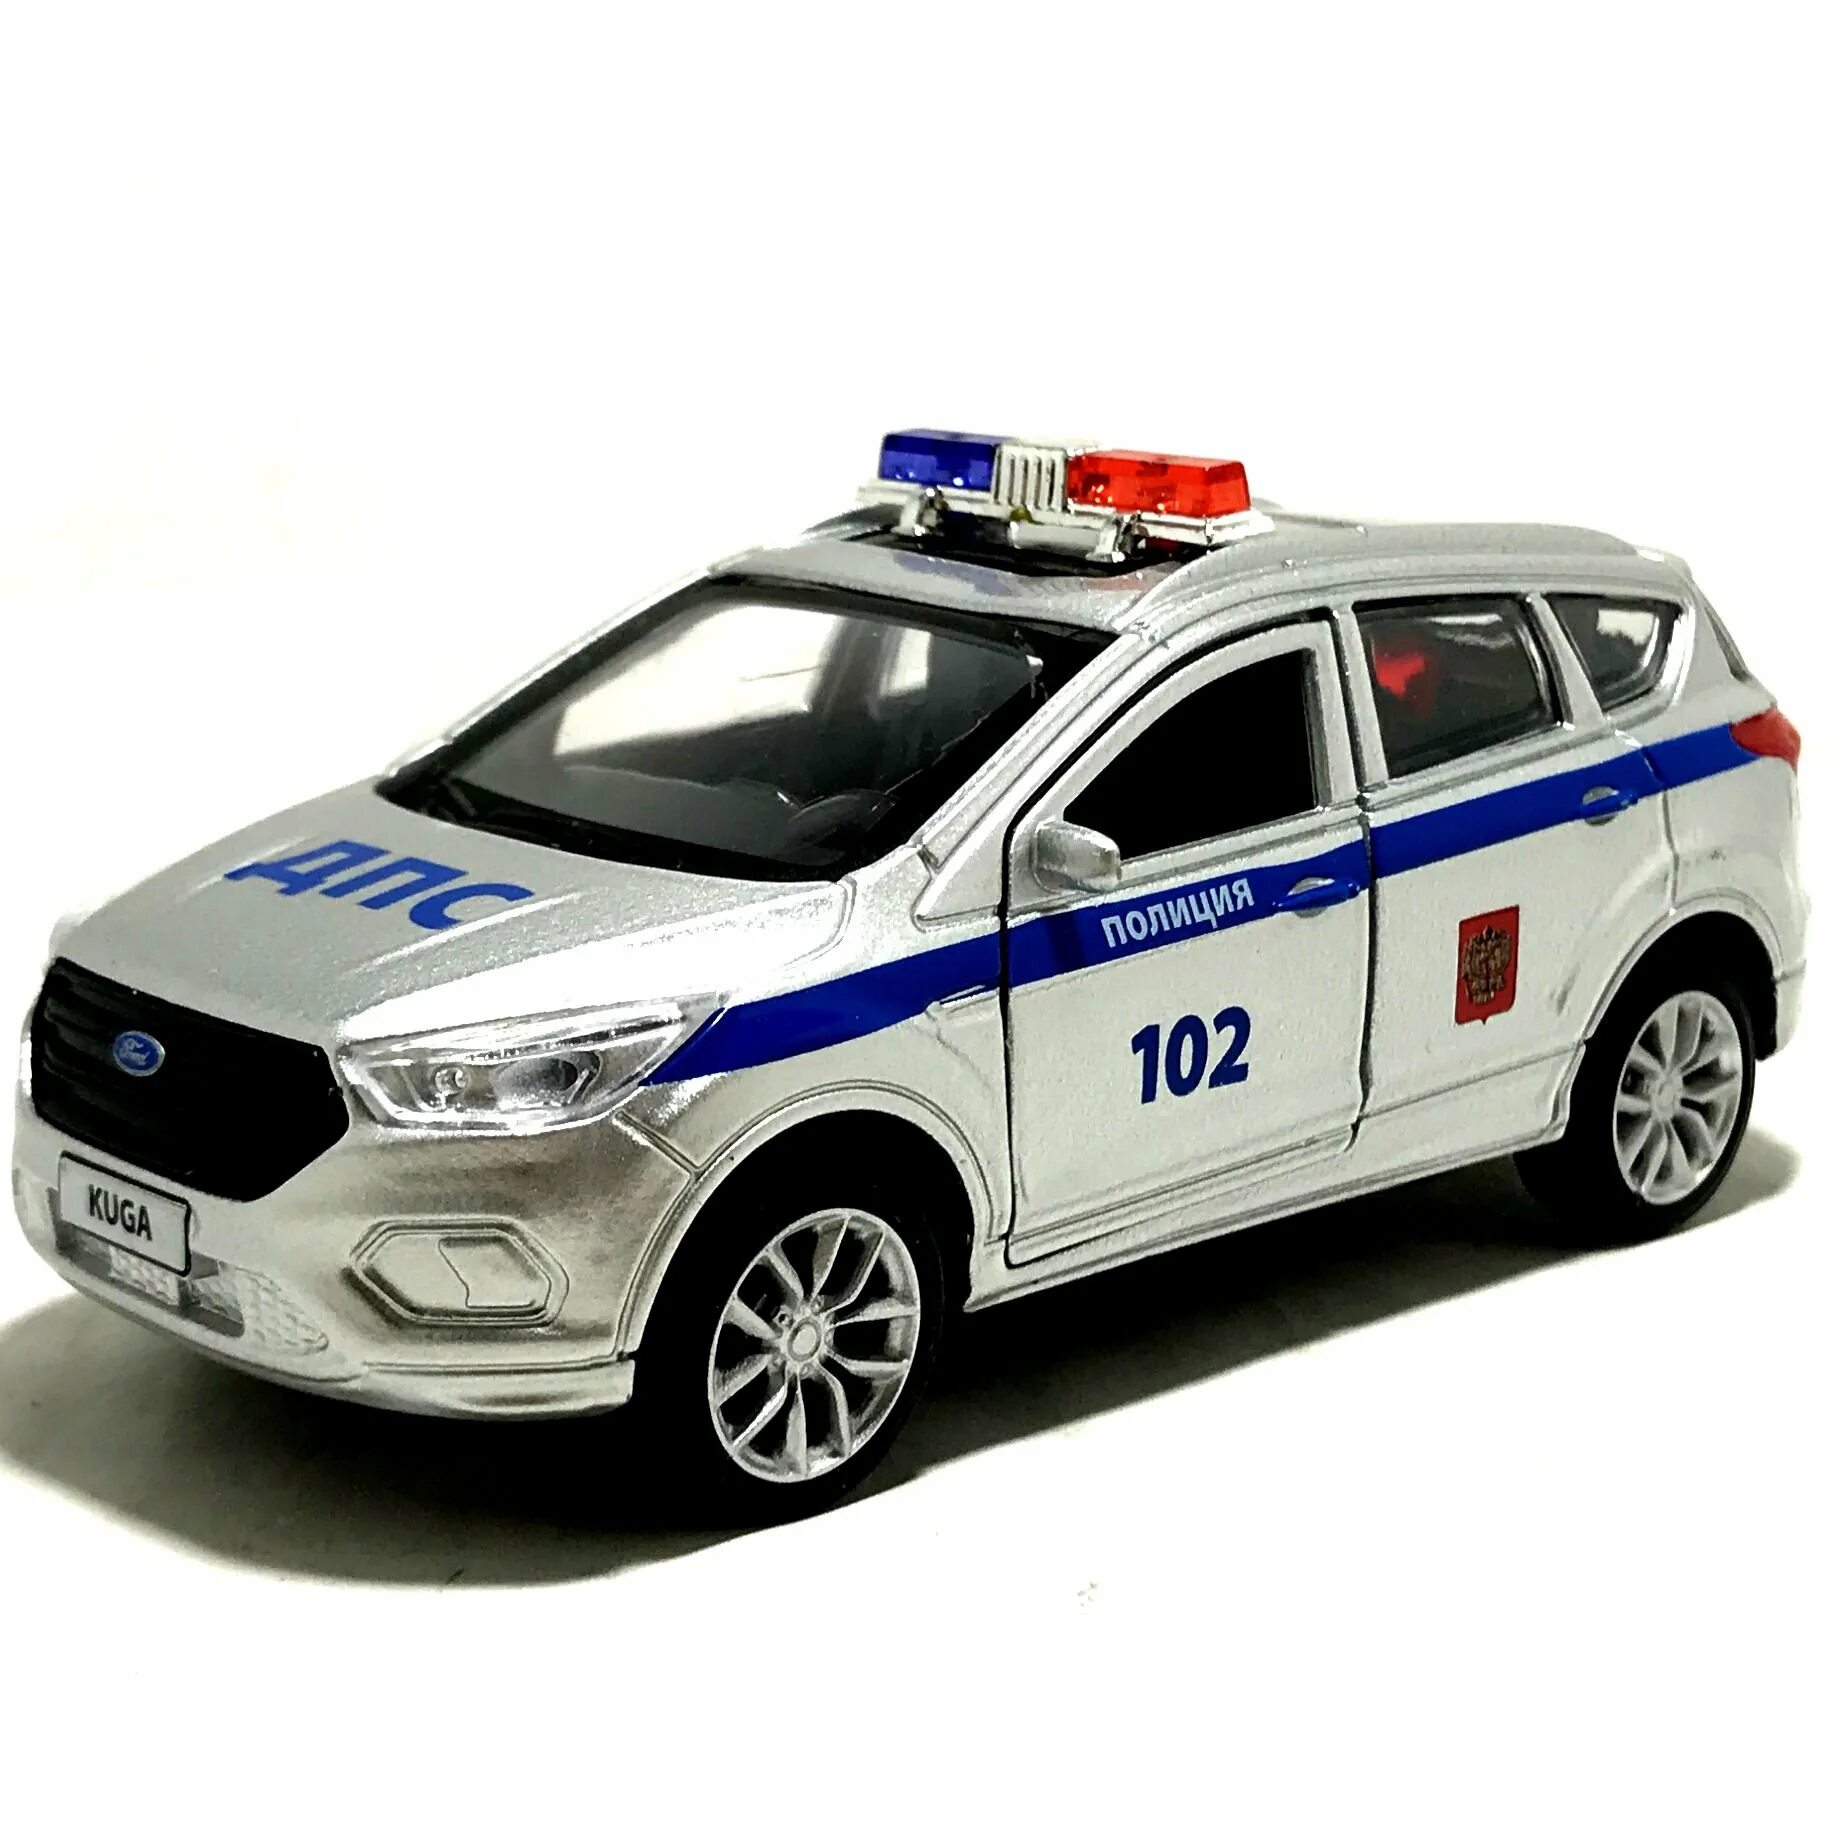 Полицейская машинка картинка. Машинки Технопарк Форд Куга. Машинка полиция 102. Полицейская машина Форд Куга. Полицейская машина игрушечная.